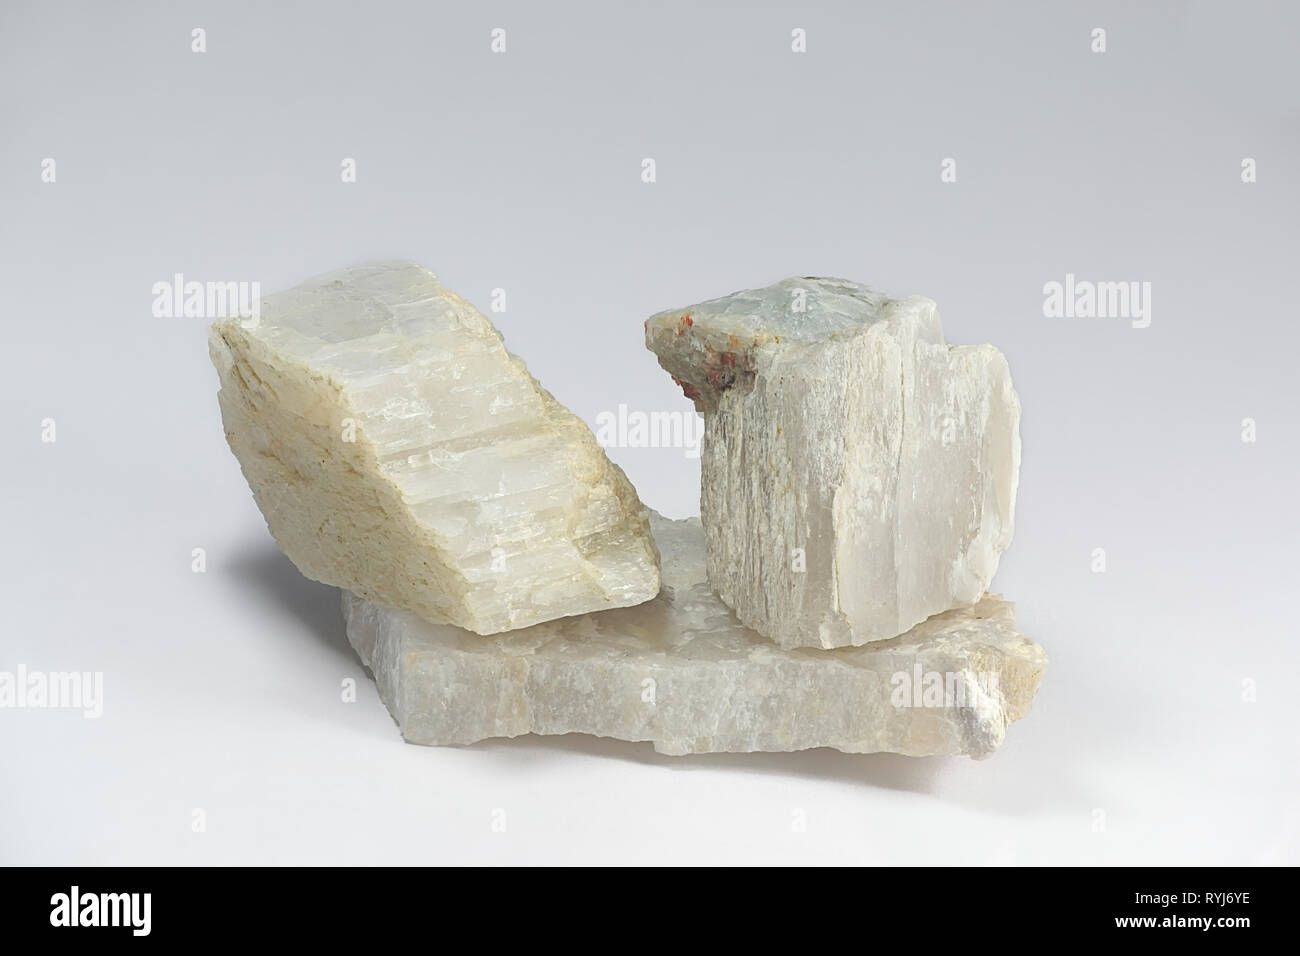 Petalite, großen Industrie lithium Erz. Probe von Somero, Finnland. Stockfoto